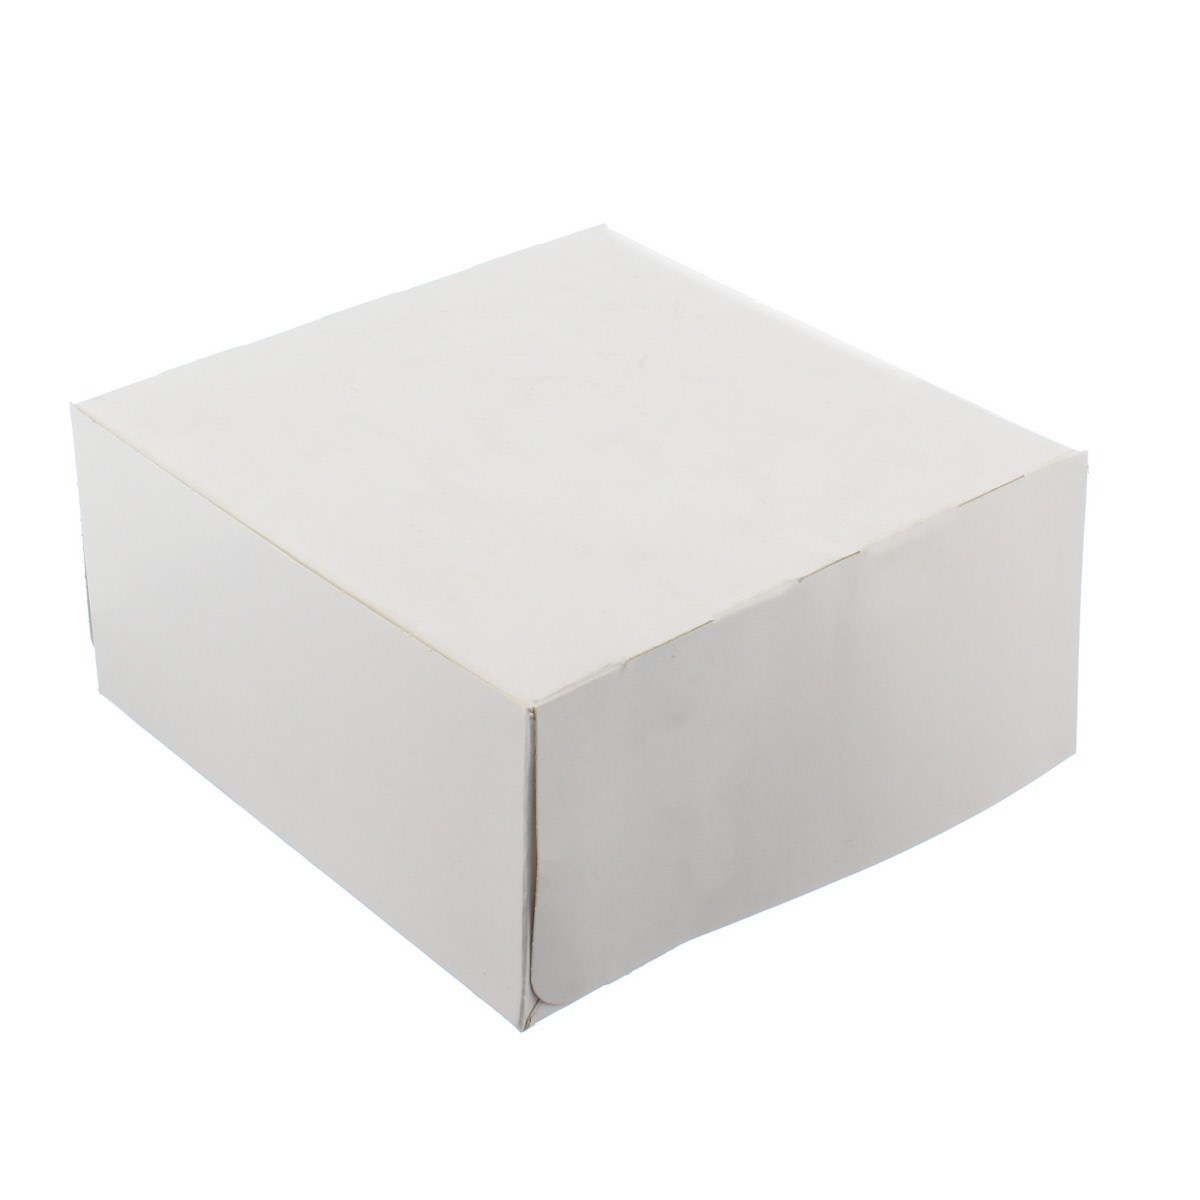 Cake Box Hinged White 12 X 12 X 4 Inch